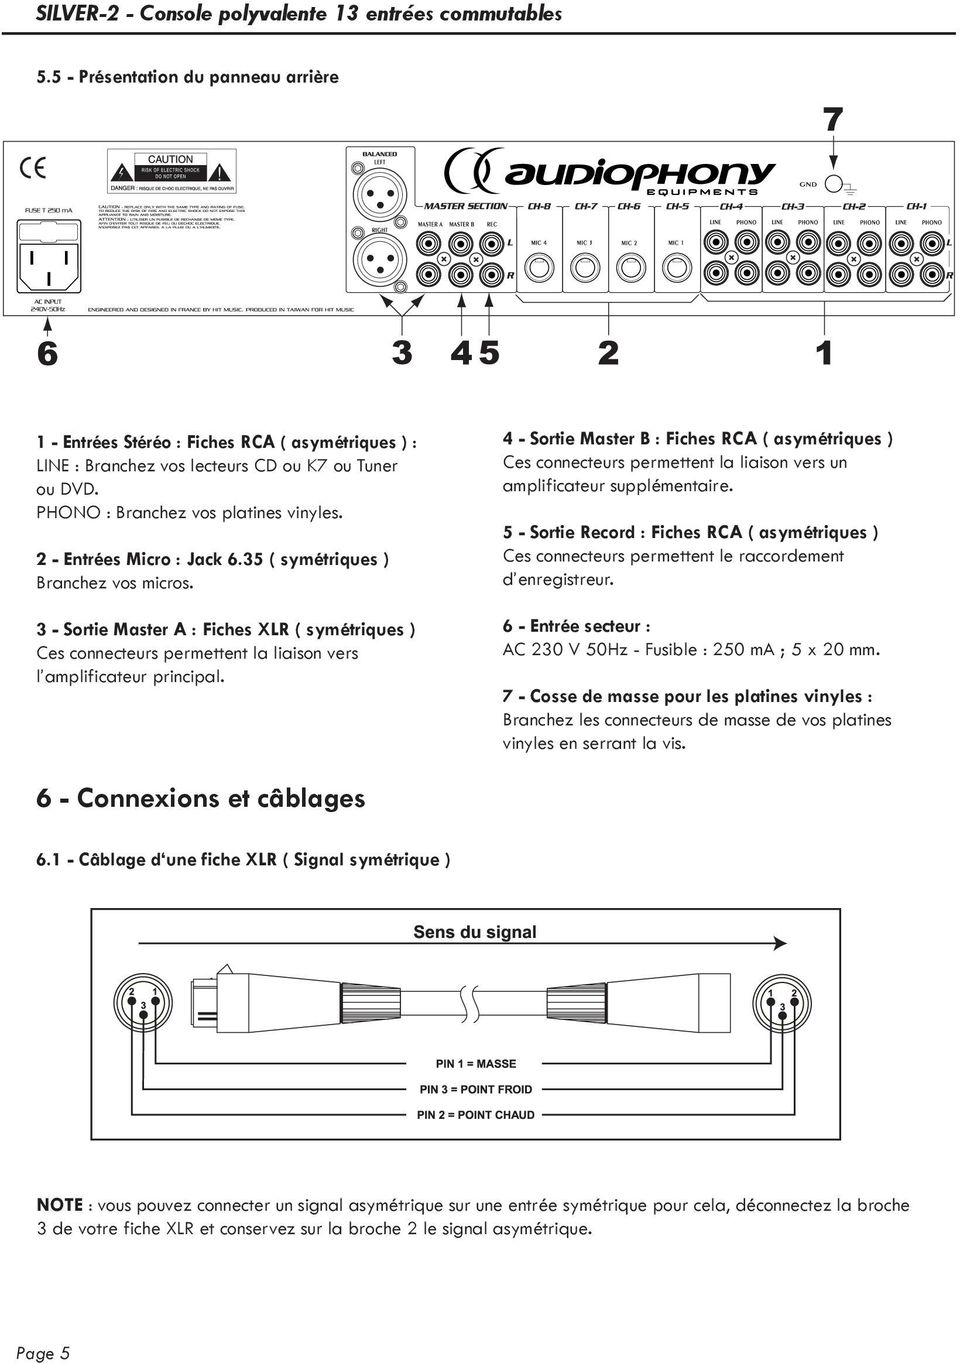 4 - Sortie Master B : Fiches RCA ( asymétriques ) Ces connecteurs permettent la liaison vers un amplificateur supplémentaire.